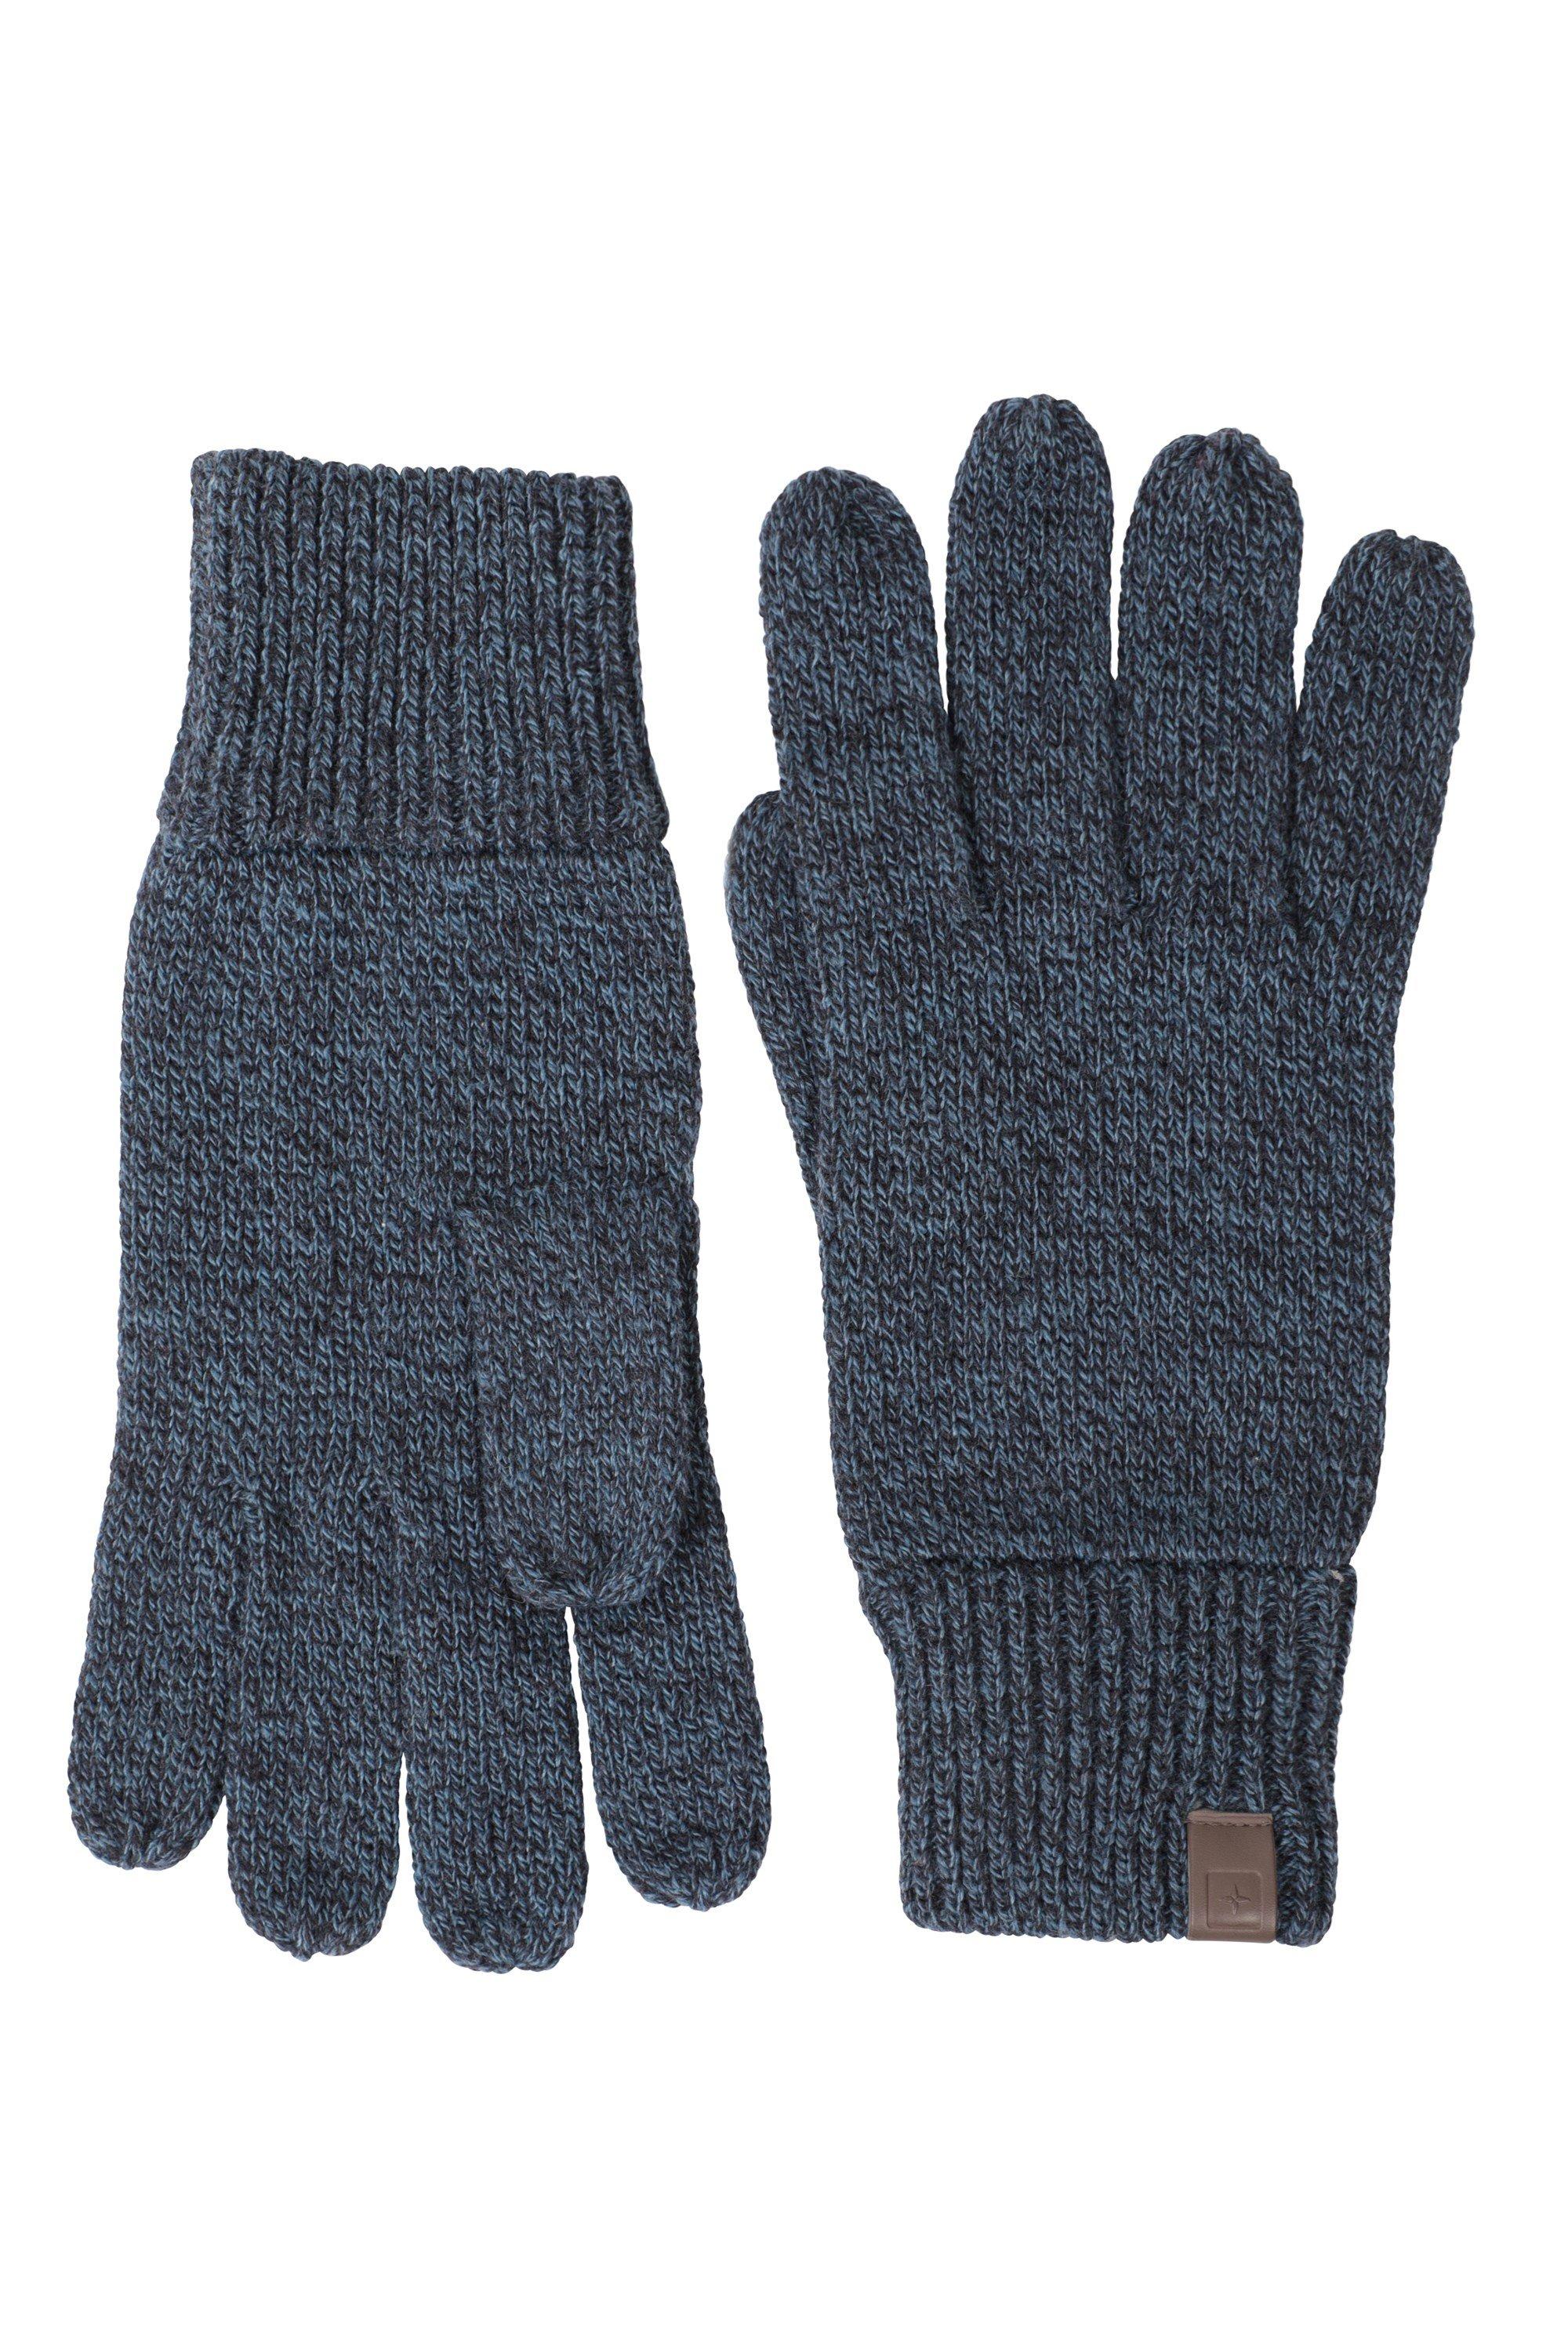 Вязаные перчатки с компасом, теплые зимние перчатки на каждый день Mountain Warehouse, синий единорог перчатка трикотажные зимние теплые мягкие перчатки mountain warehouse фиолетовый